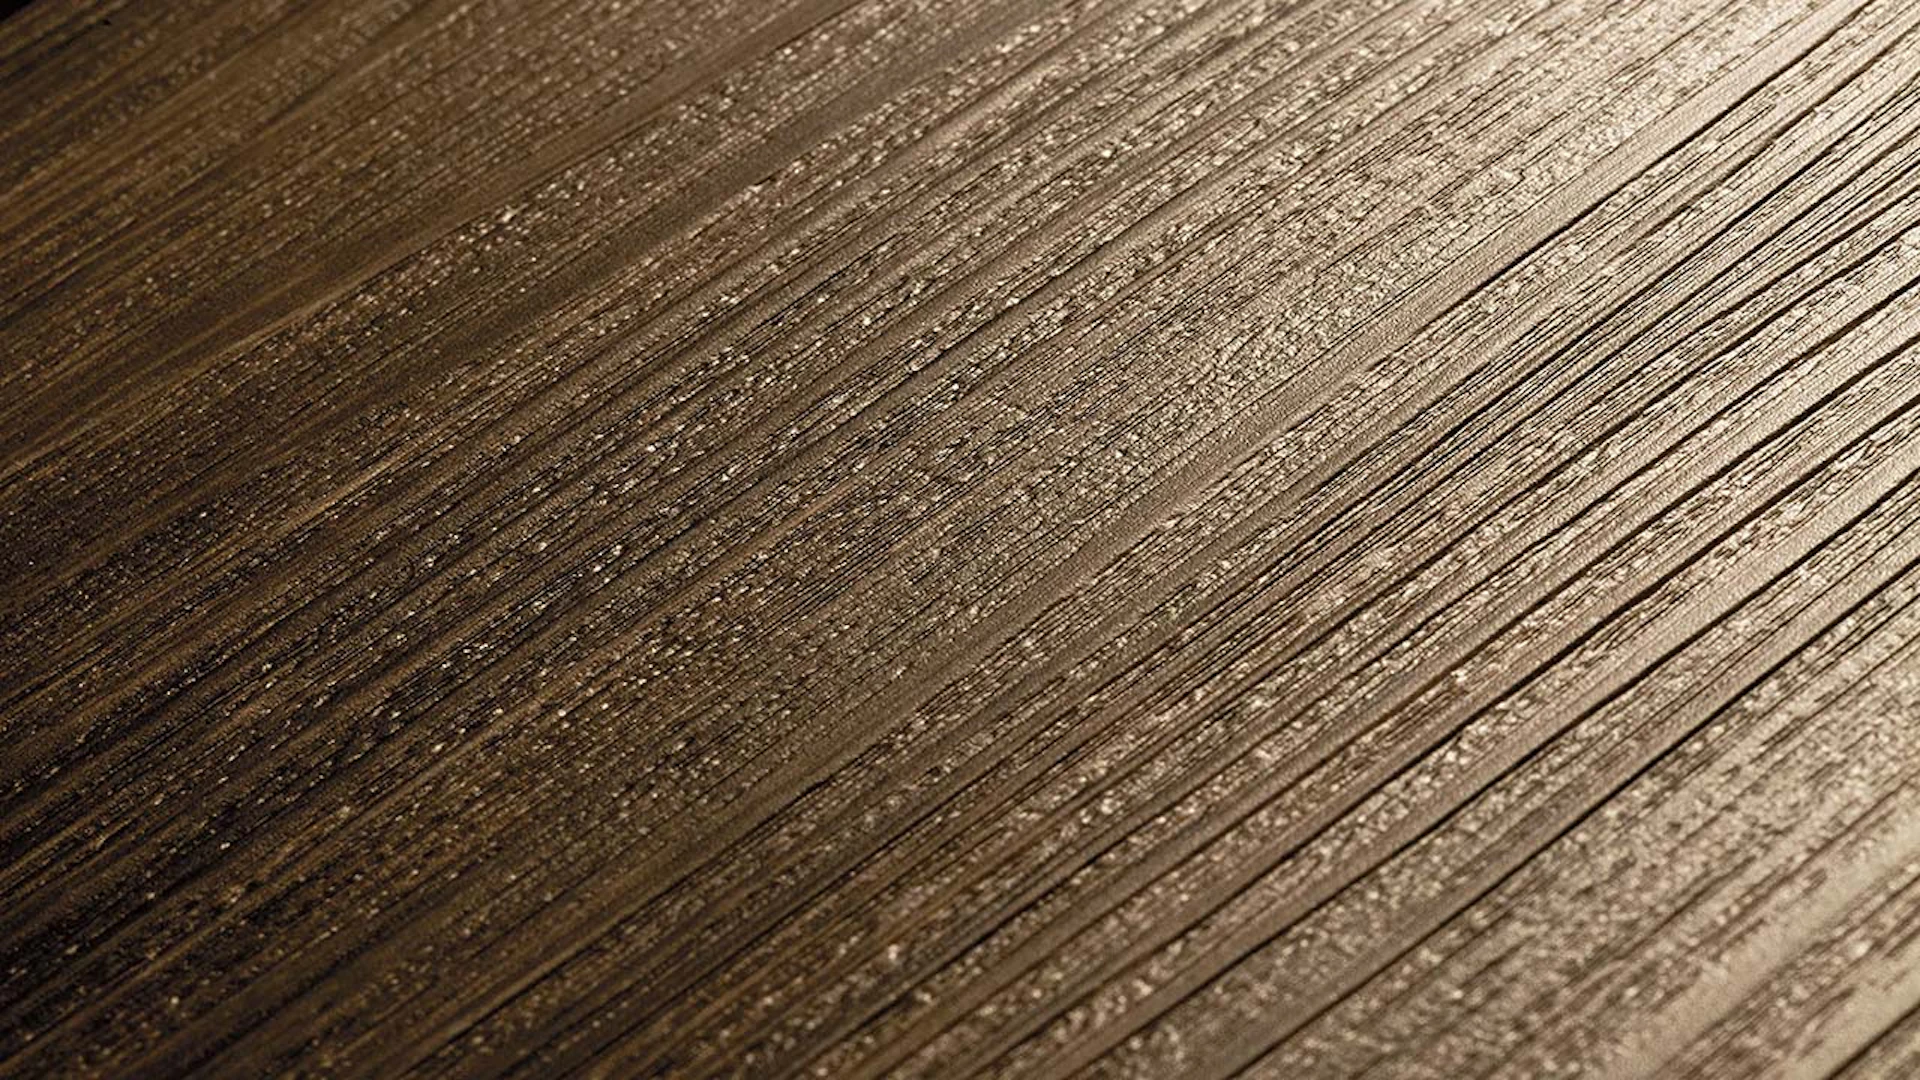 Project Floors adhesive Vinyl - floors@work55 55 PW 3260 (PW326055)